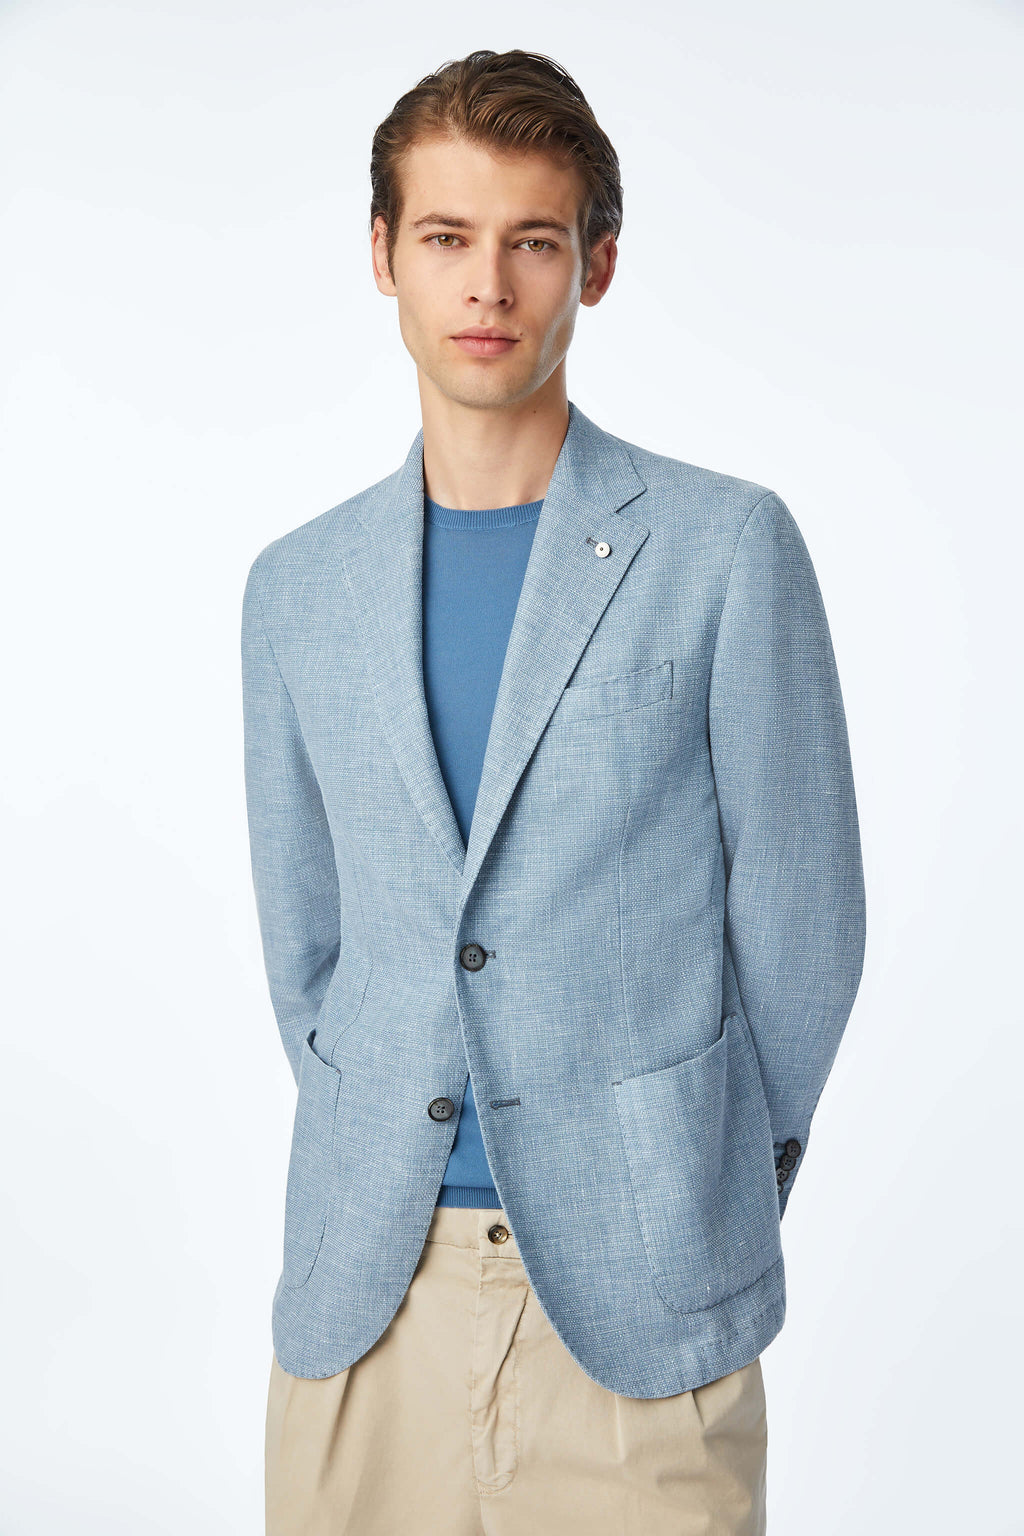 Garment-dyed JACK jacket in light Blue